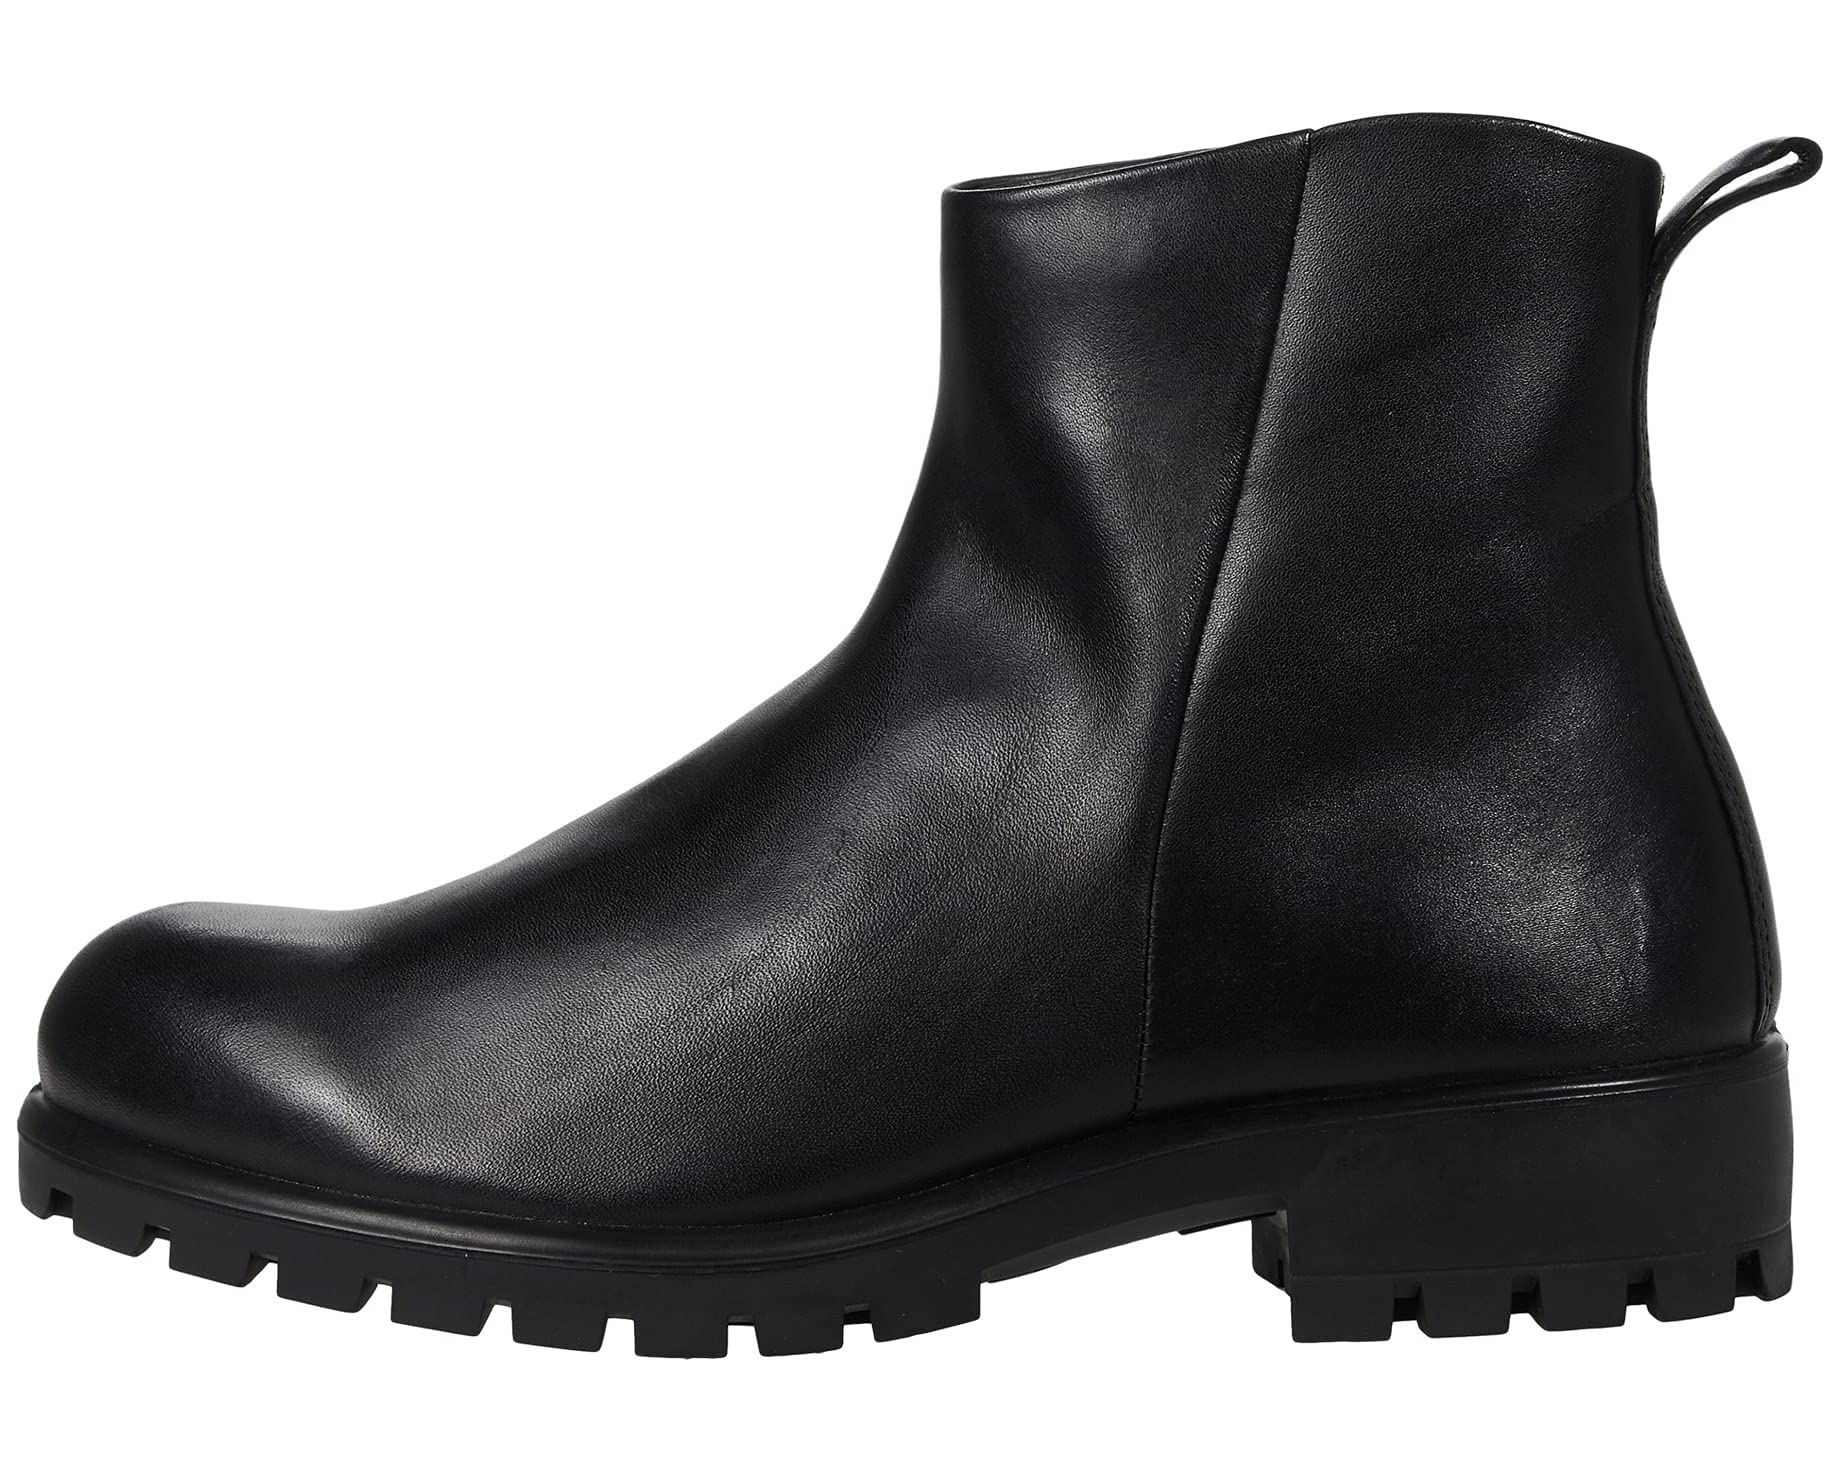 Ботинки Modtray Hydromax Ankle Boot ECCO, черный ботинки высокие ecco modtray w черный 37 размер